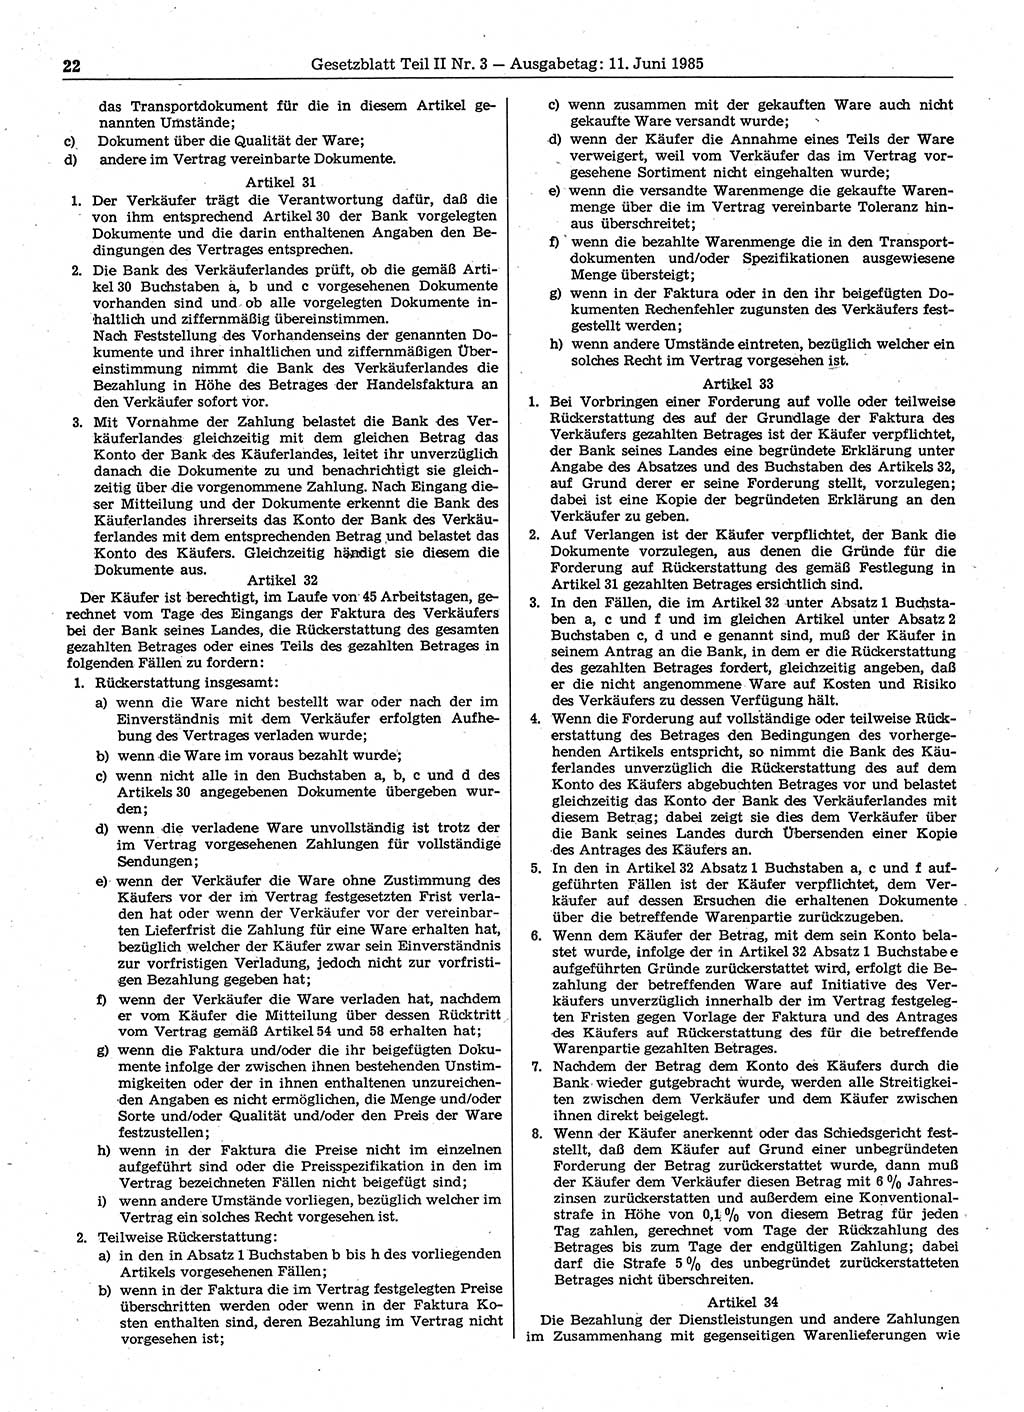 Gesetzblatt (GBl.) der Deutschen Demokratischen Republik (DDR) Teil ⅠⅠ 1985, Seite 22 (GBl. DDR ⅠⅠ 1985, S. 22)